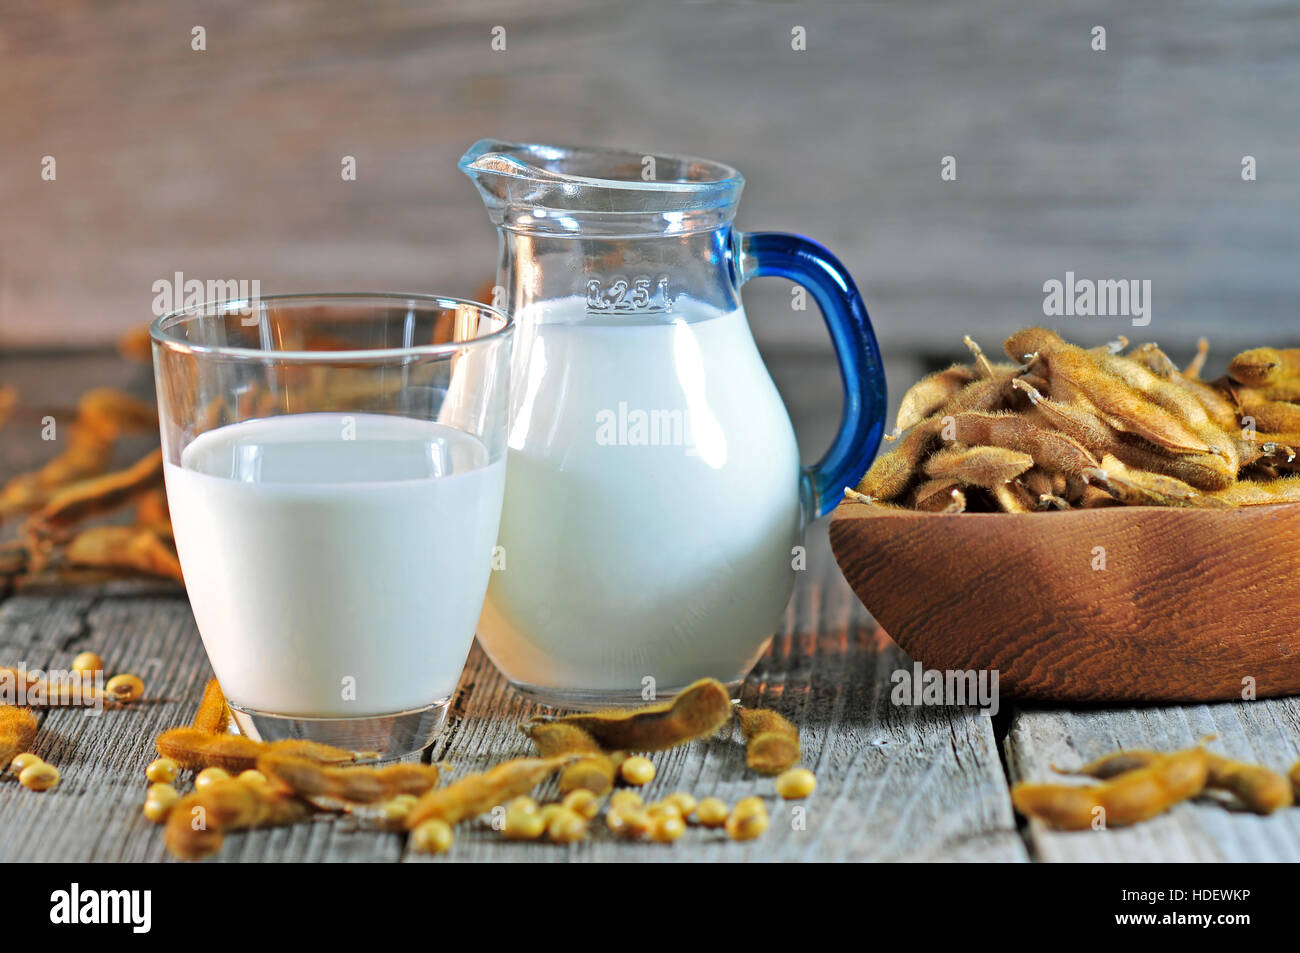 Close-up Of Soy Milk Jar. by Stocksy Contributor Martí Sans